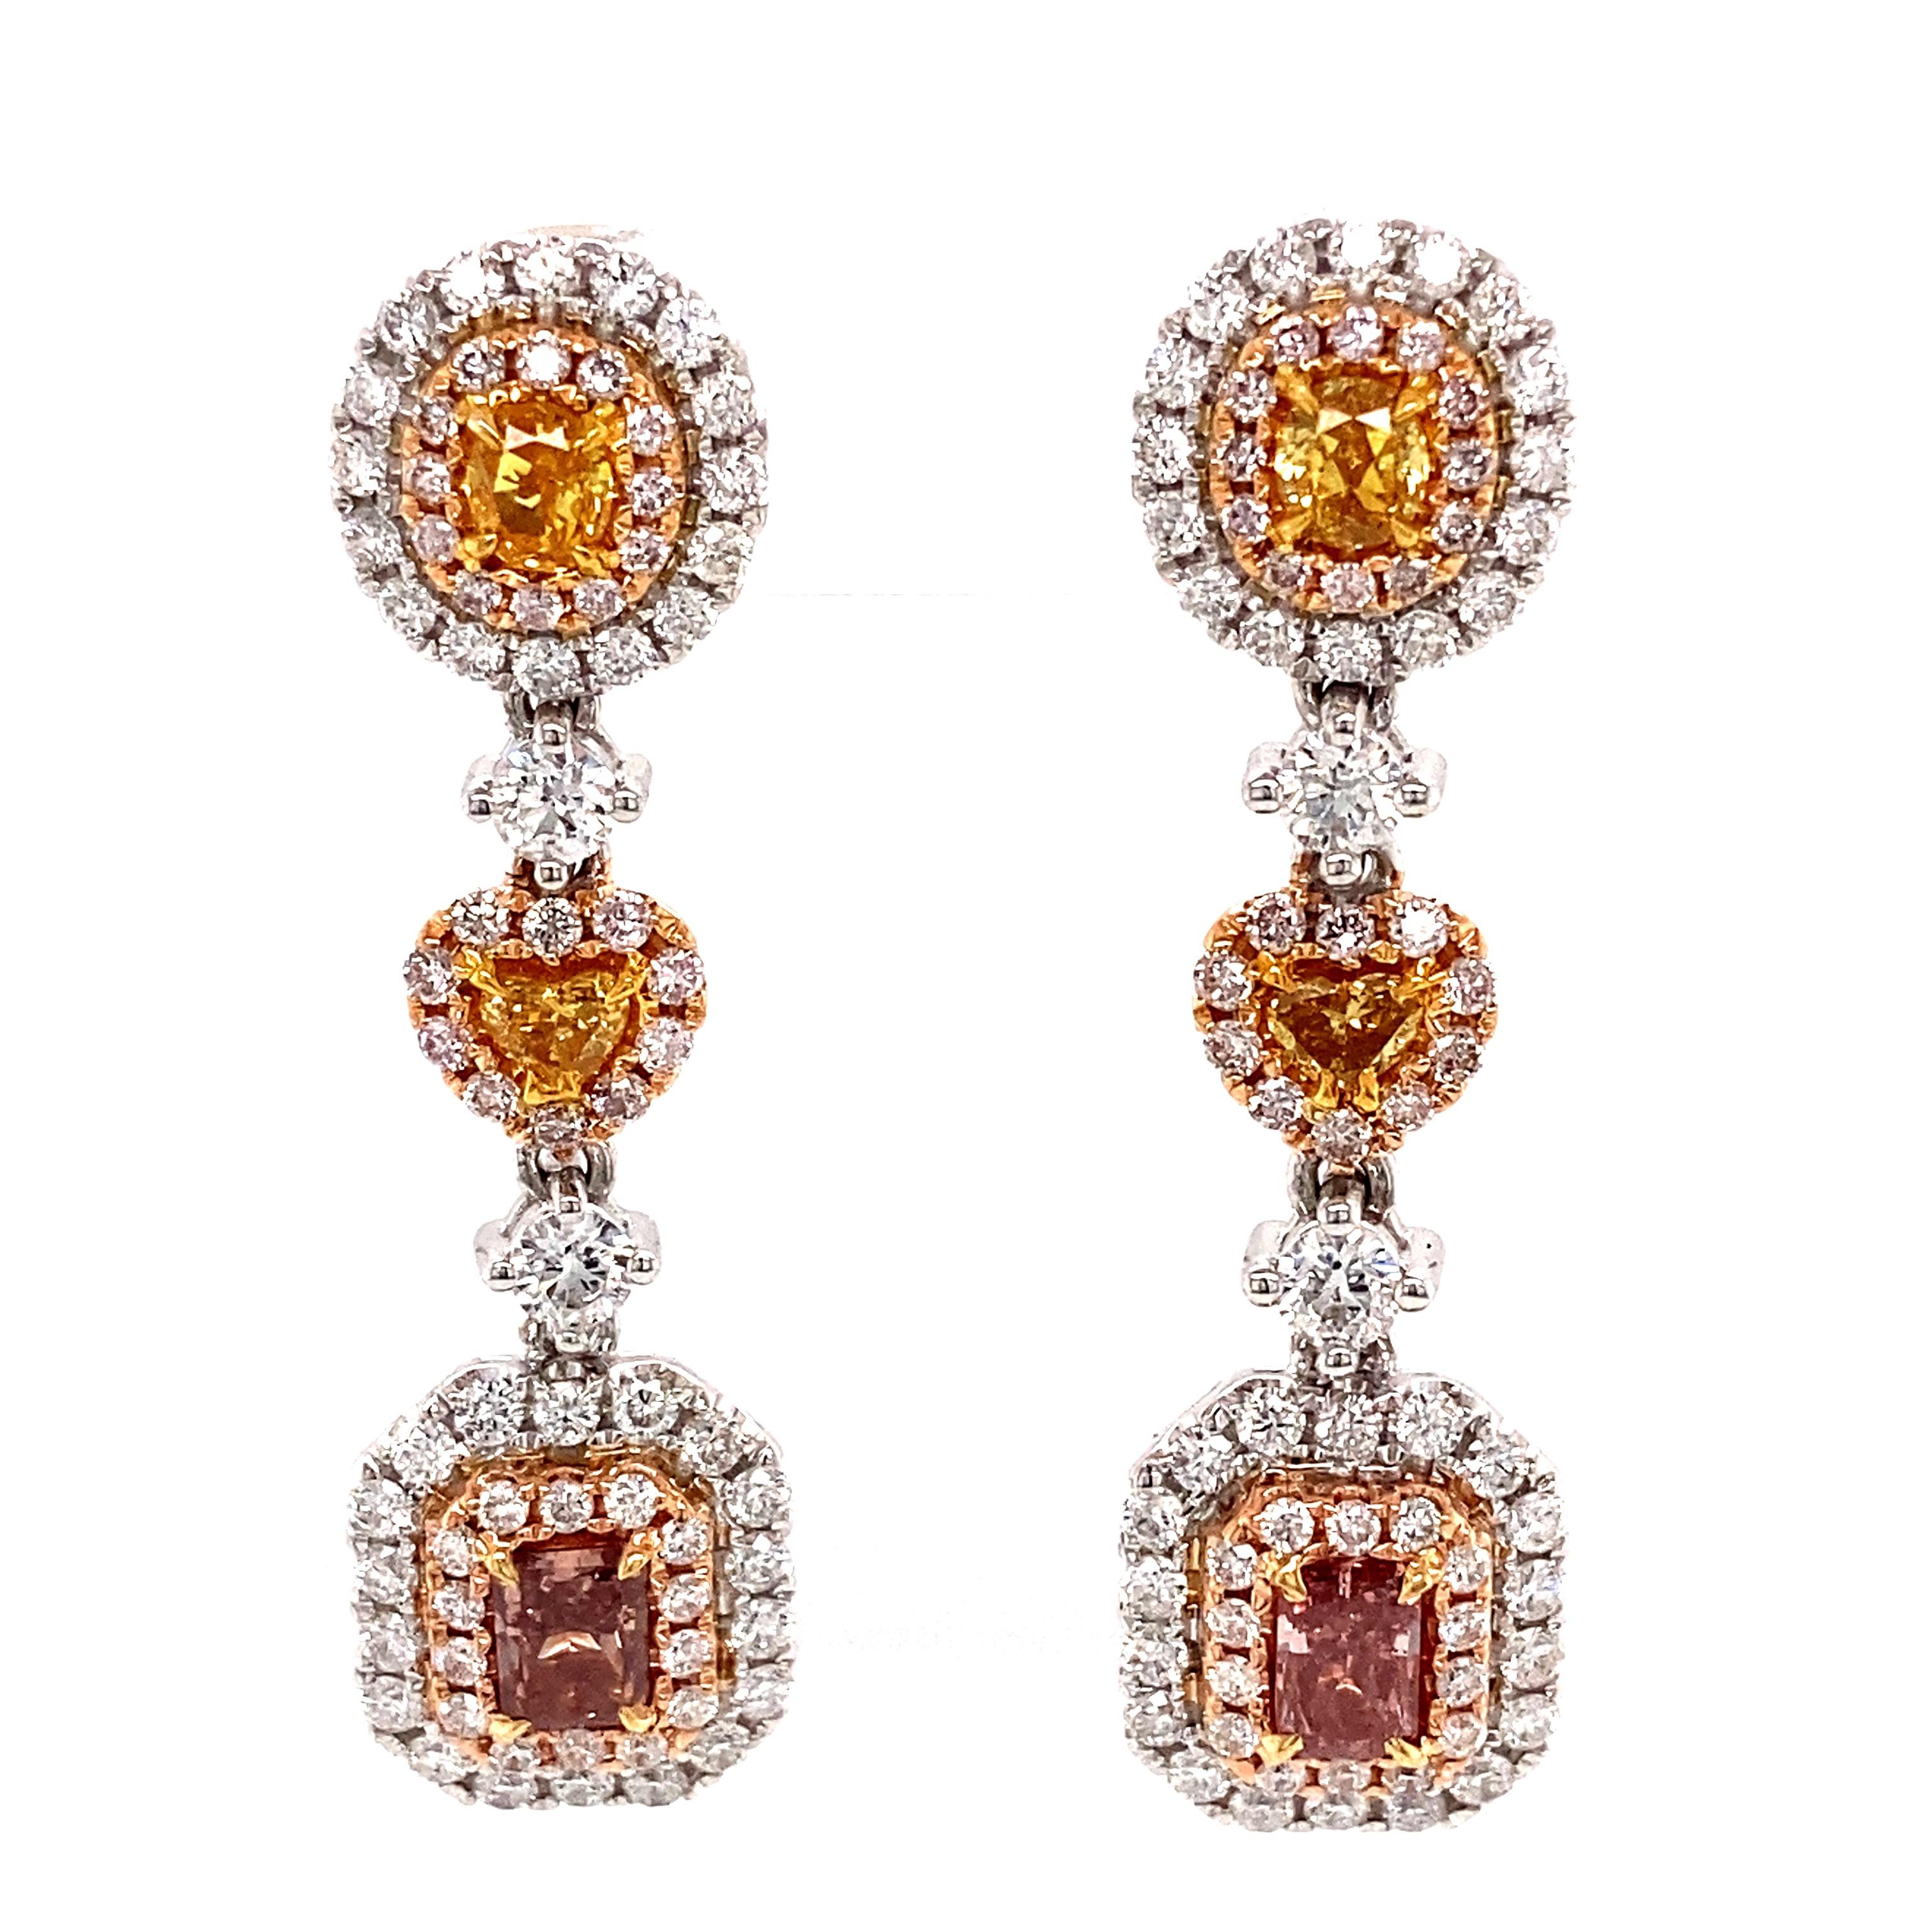 Radiant Cut Alexander GIA Certified 2.82ctt Fancy Intense Pink & Yellow Diamond Earrings 18k For Sale